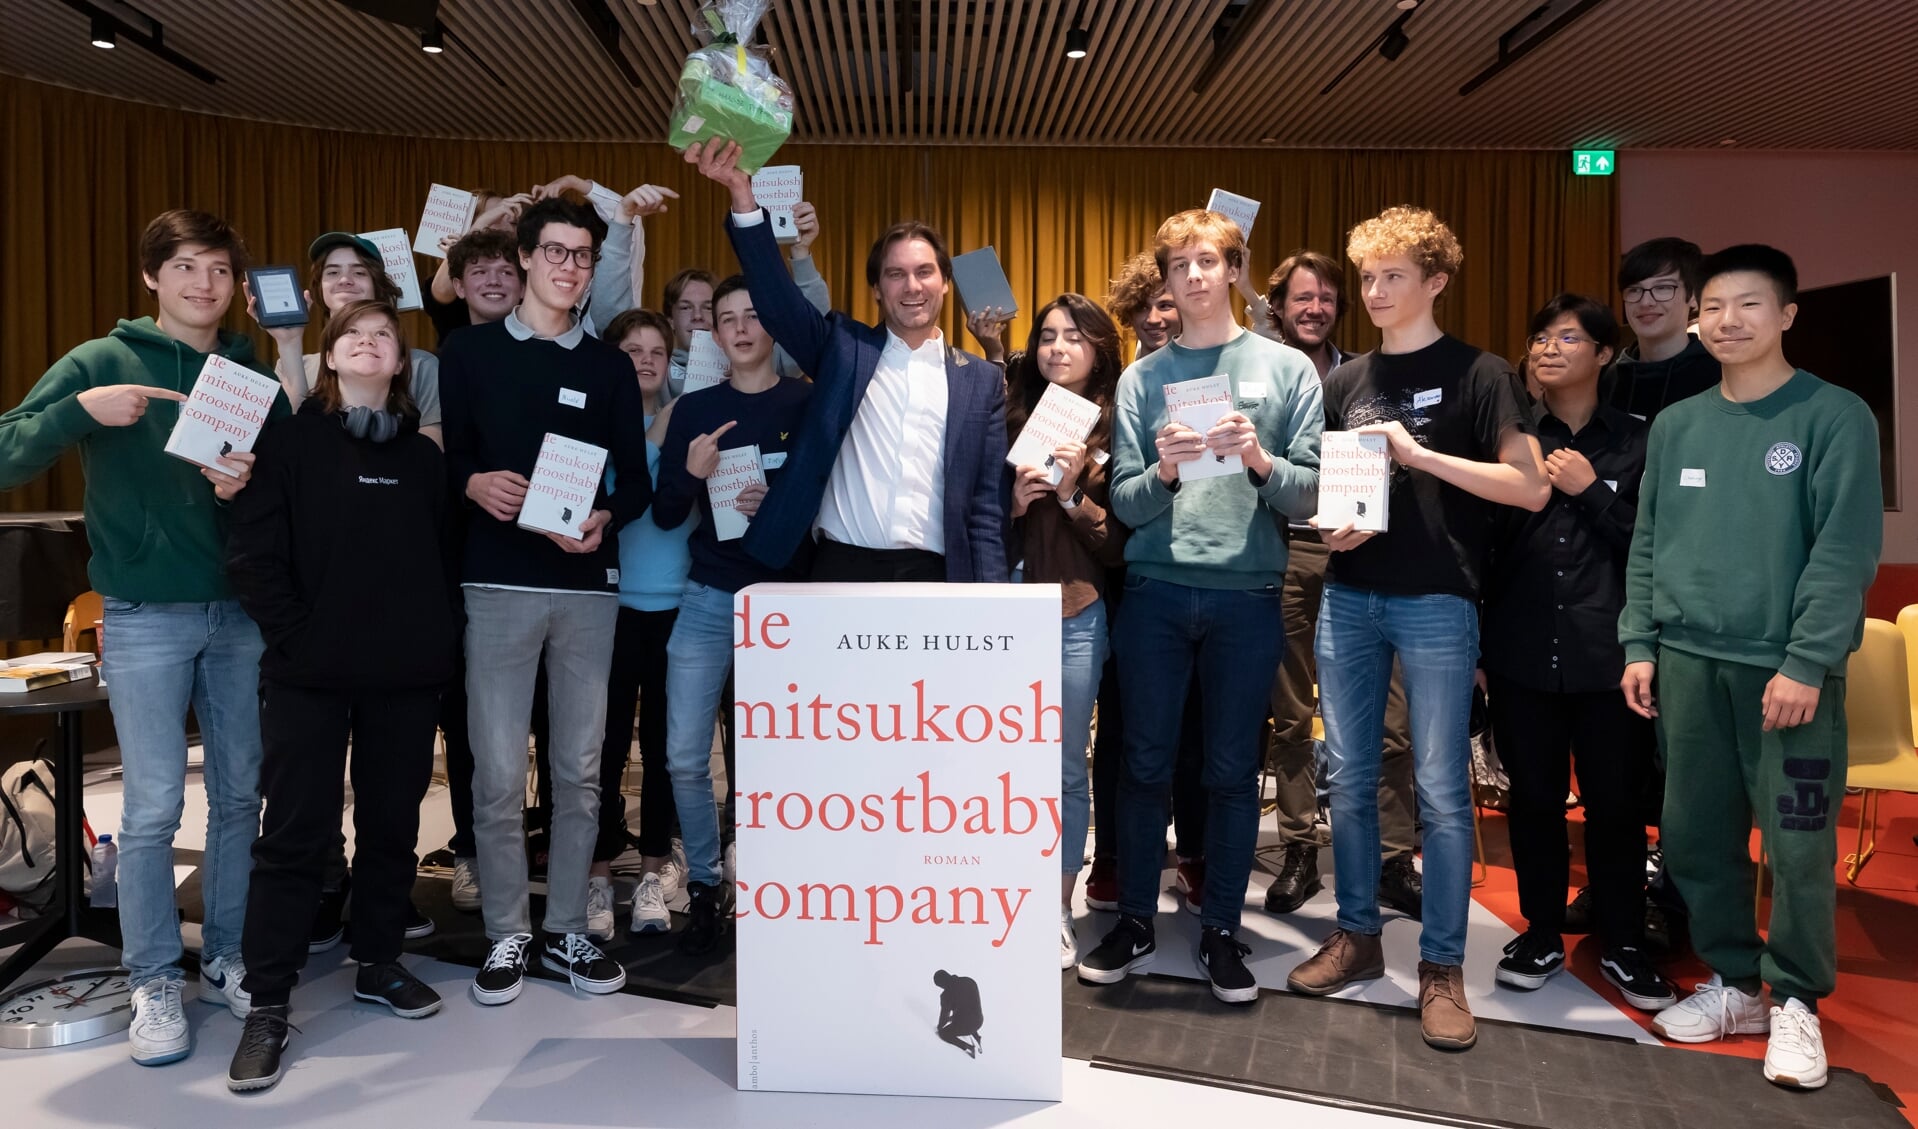 Voorafgaand aan de bekroning 'Beste literaire boek 2022' gaan Haagse scholieren in de Centrale Bibliotheek in debat met de genomineerde auteurs.